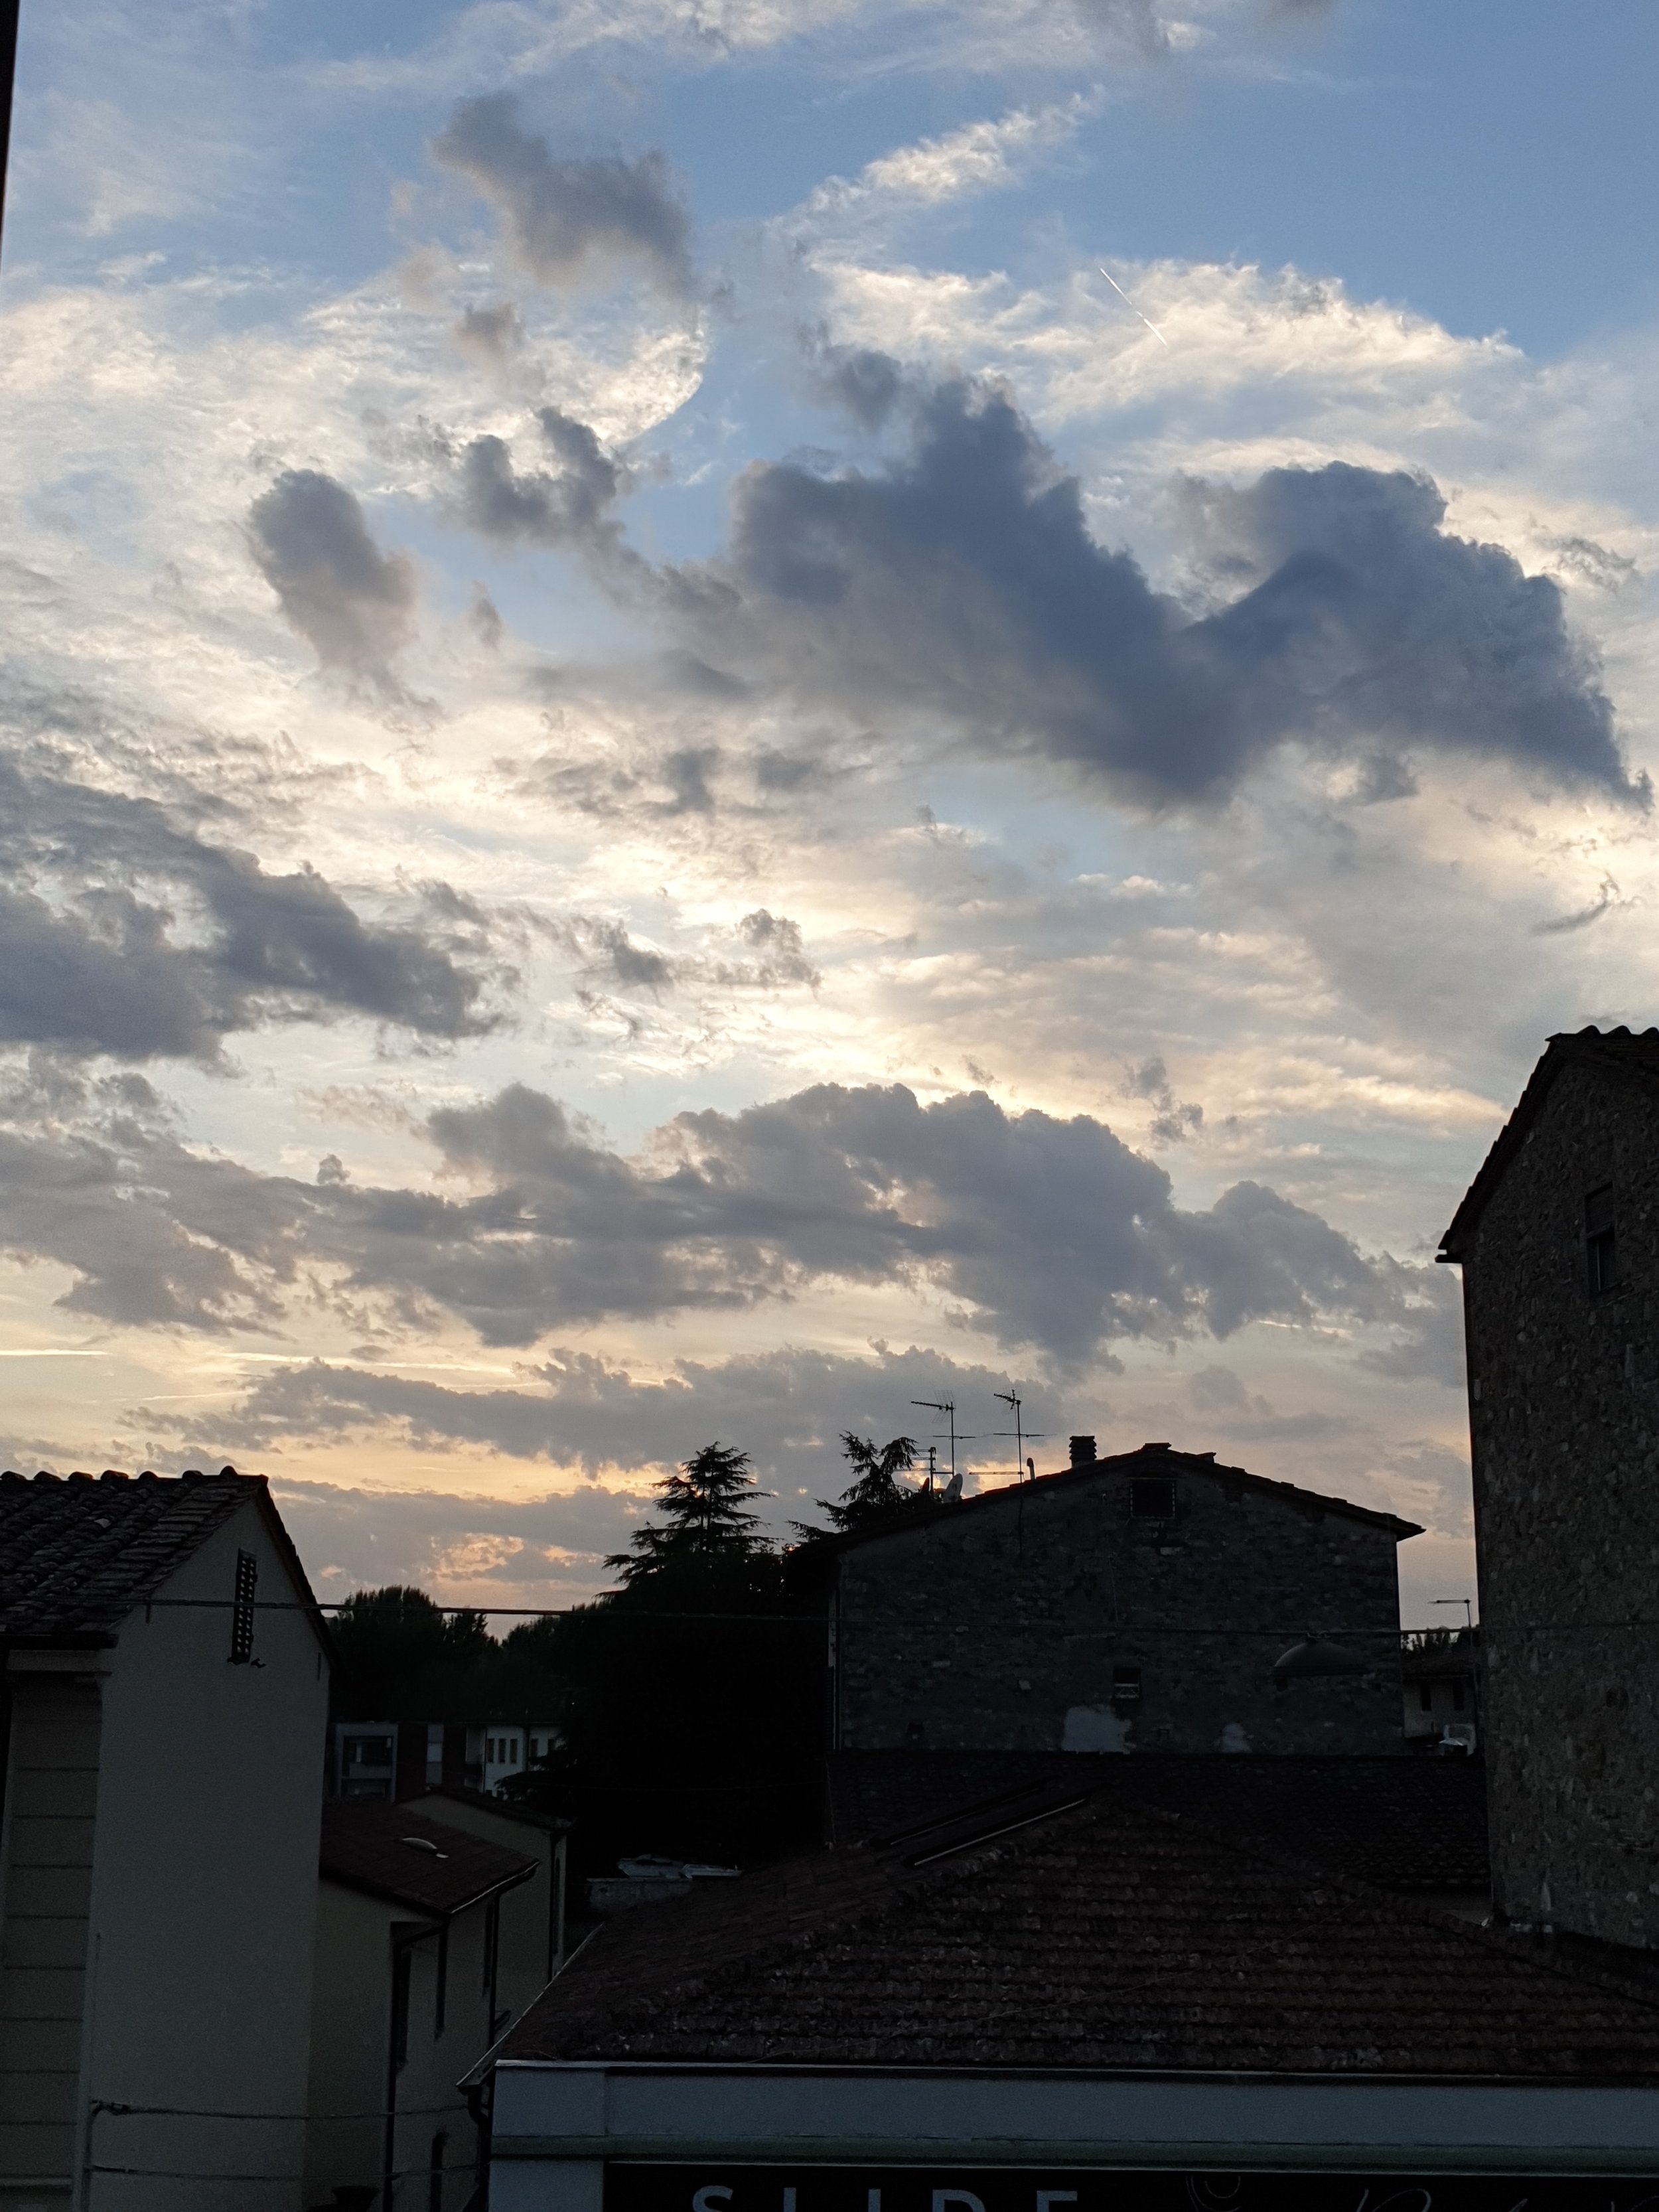 Borgo clouds.jpg